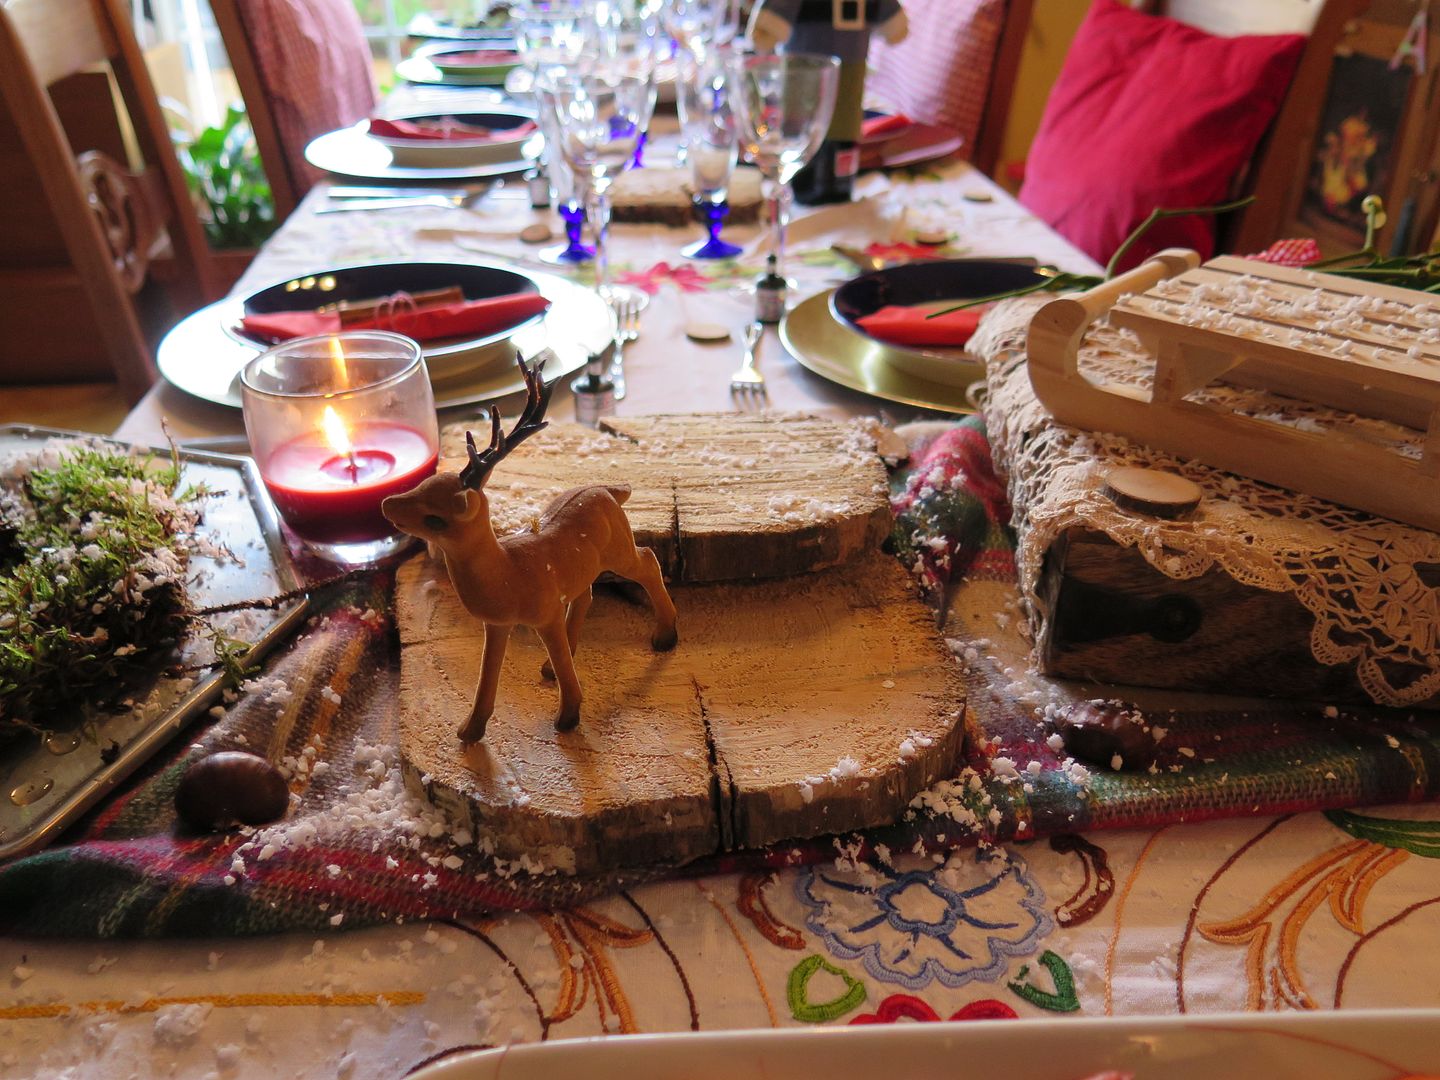  photo mesa-navidad-invierno-decoracioacuten-troncos-madera5_zps6c8b2628.jpg